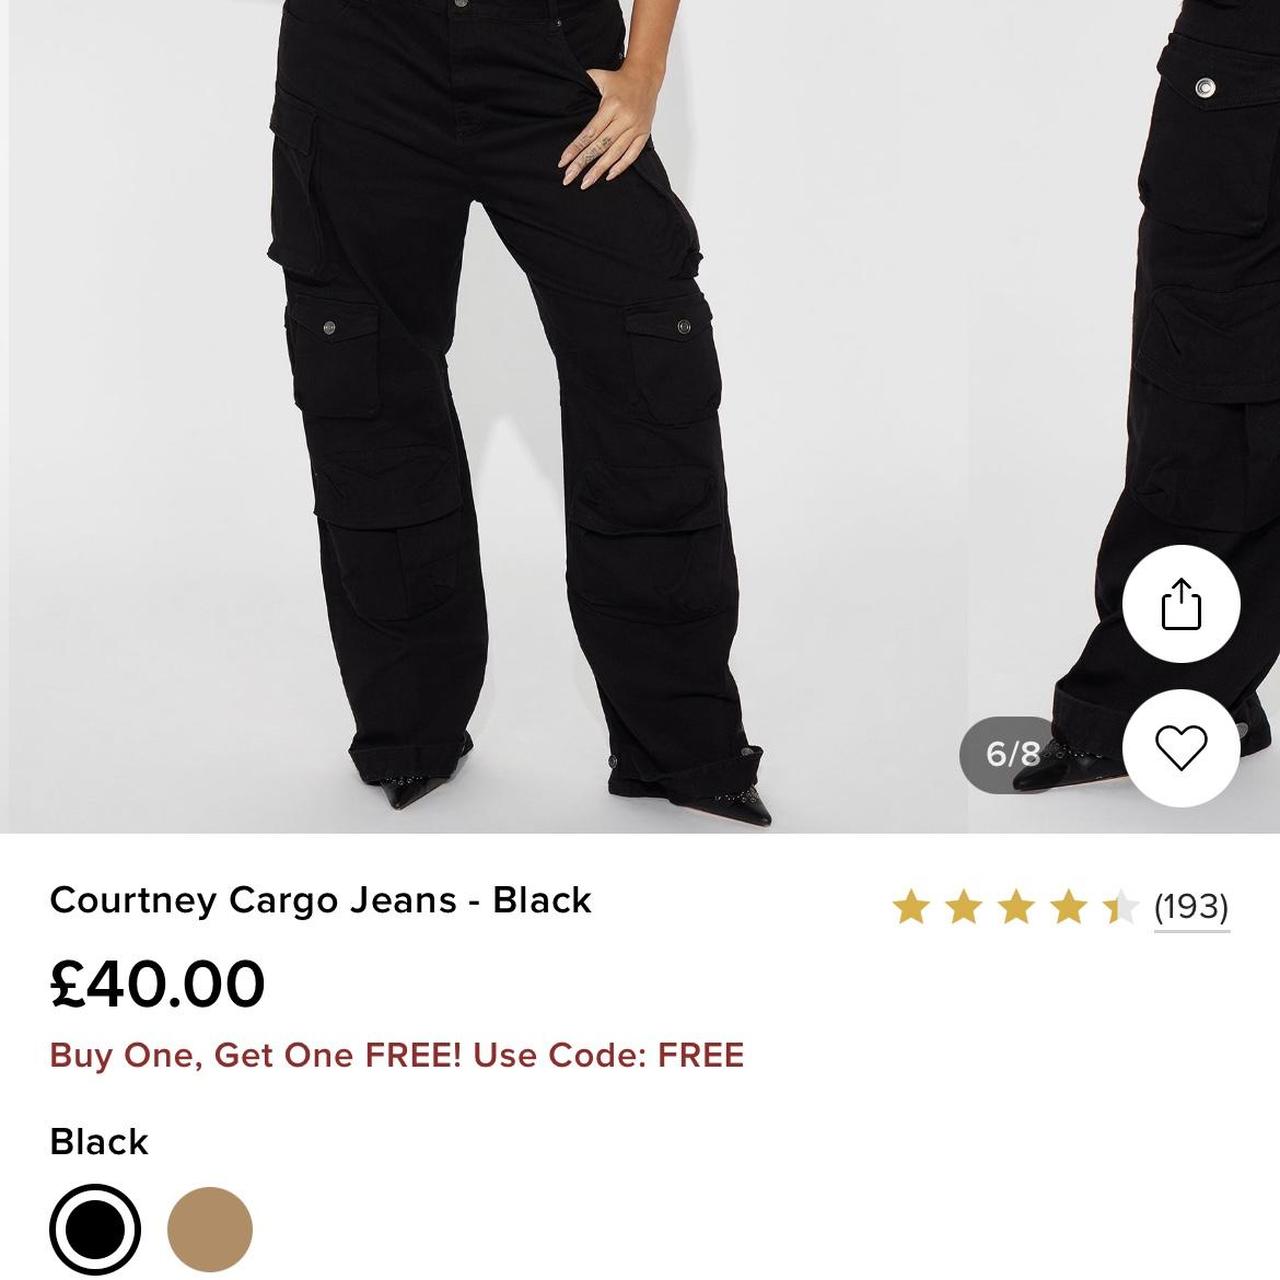 Courtney Cargo Jeans - Black